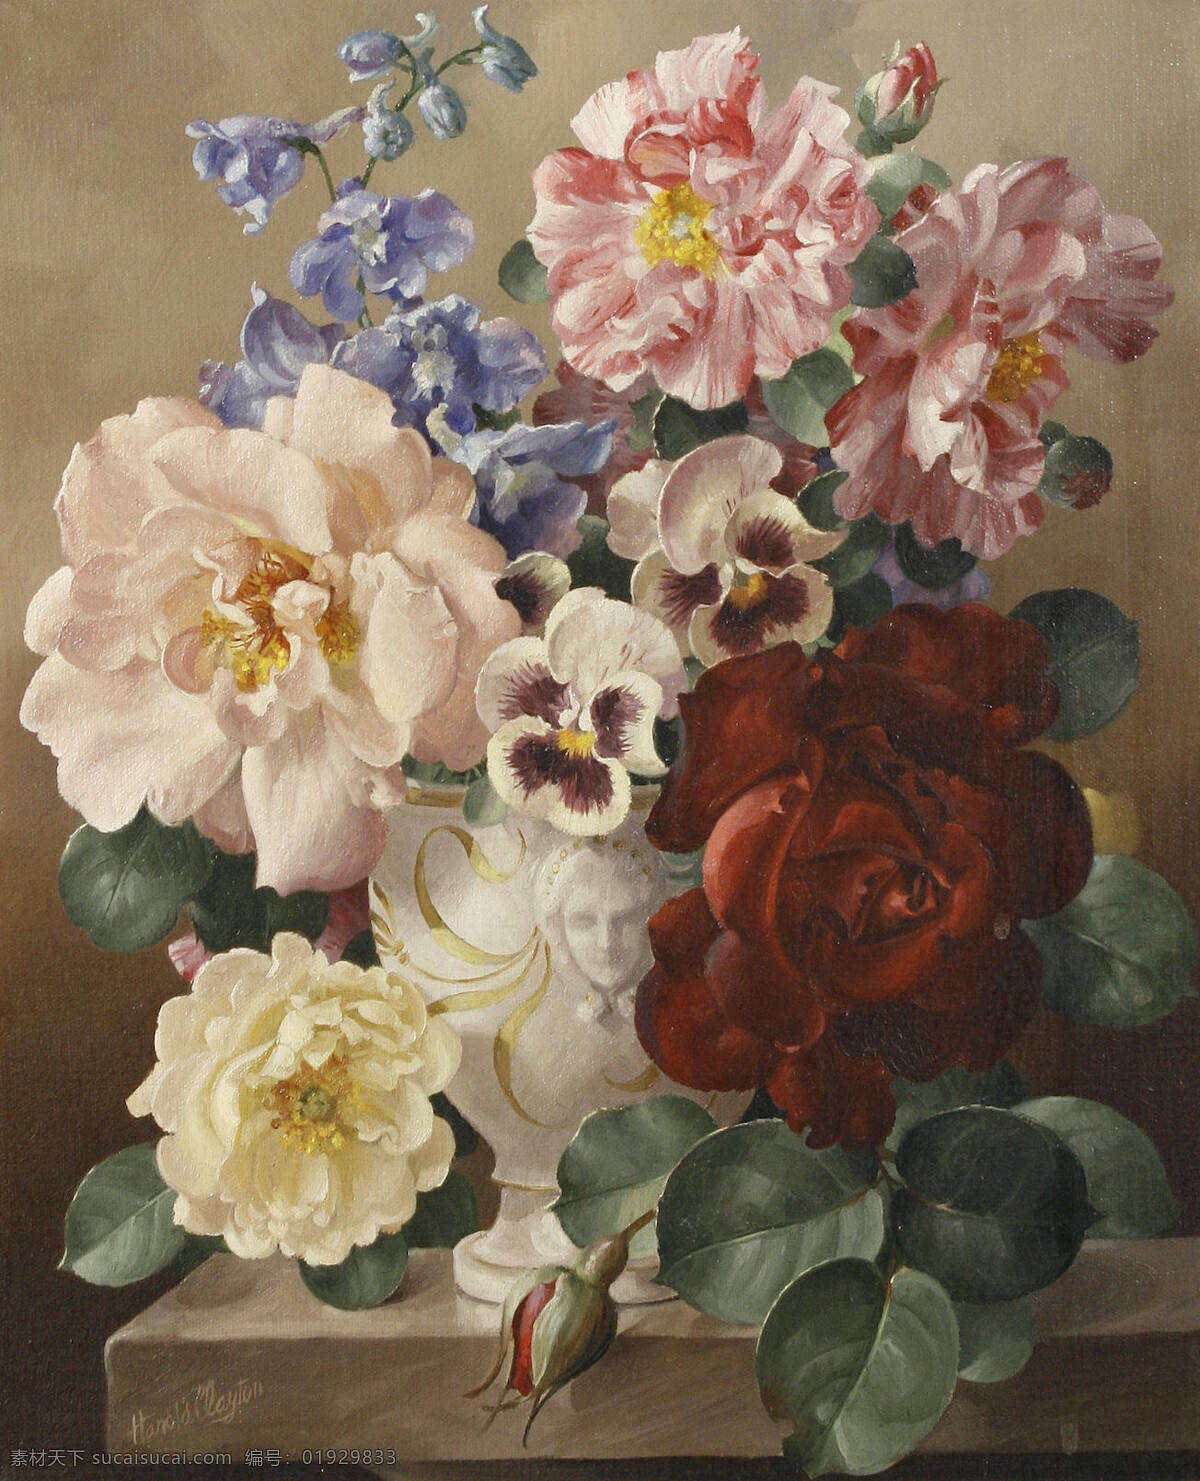 哈罗德 克莱顿 作品 英国画家 静物鲜花 混搭 蜀葵 大红玫瑰 浮雕花瓶 20世纪油画 油画 文化艺术 绘画书法